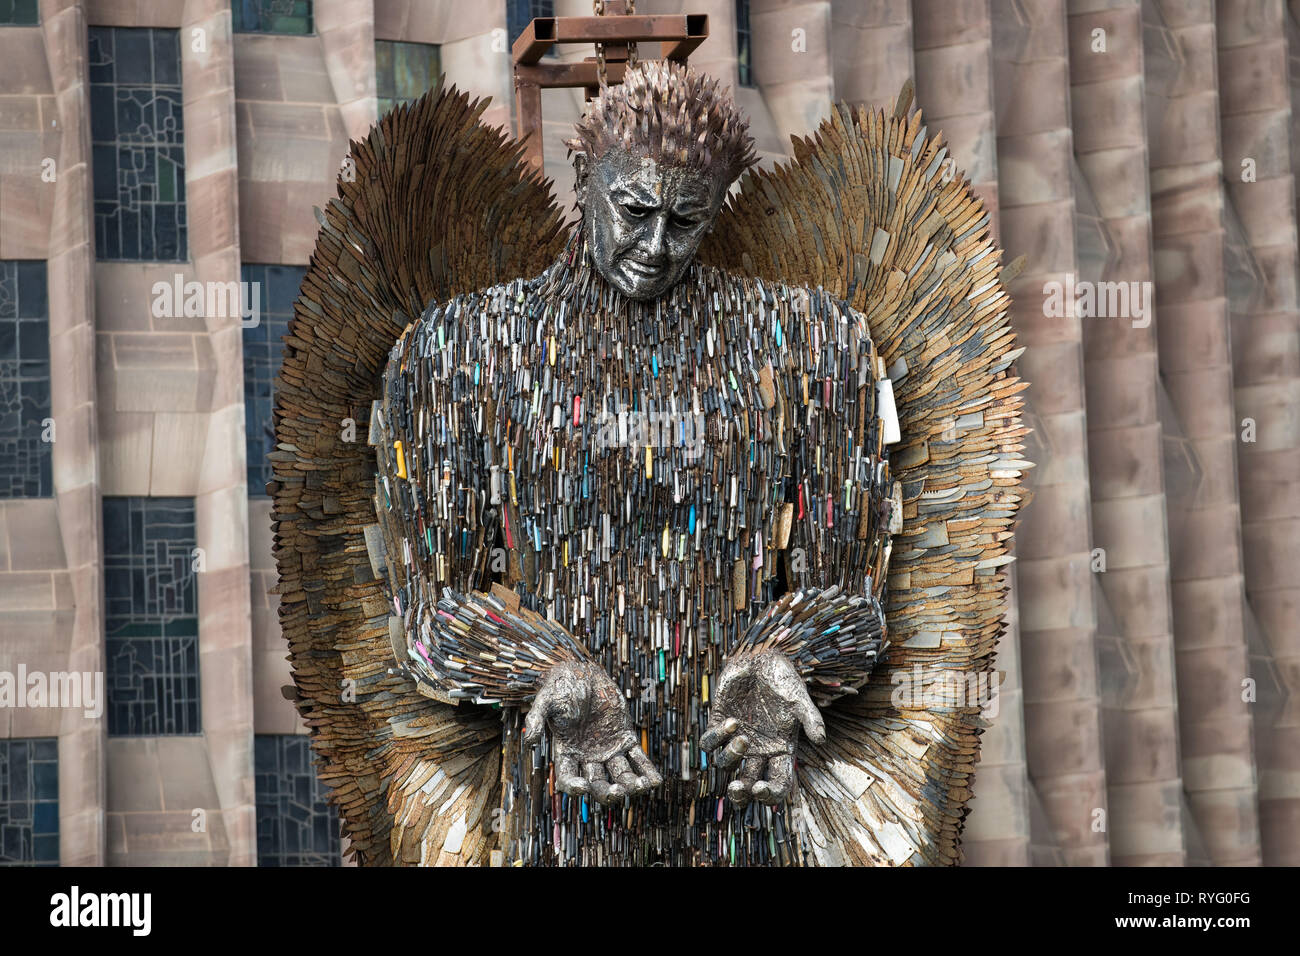 Ein Messer Engel Skulptur, aus 100.000 beschlagnahmte Messer, ist in der Kathedrale von Coventry installiert. Die 27 Meter hohe Kunstwerk, geschaffen von der Künstlerin Alfie Bradley, beginnt seinen Wohnsitz an der Kathedrale bis April 23' als physische Erinnerung an die Auswirkungen von Gewalt und Aggression". Coventry Cathedral, Priory Street, Coventry. Stockfoto